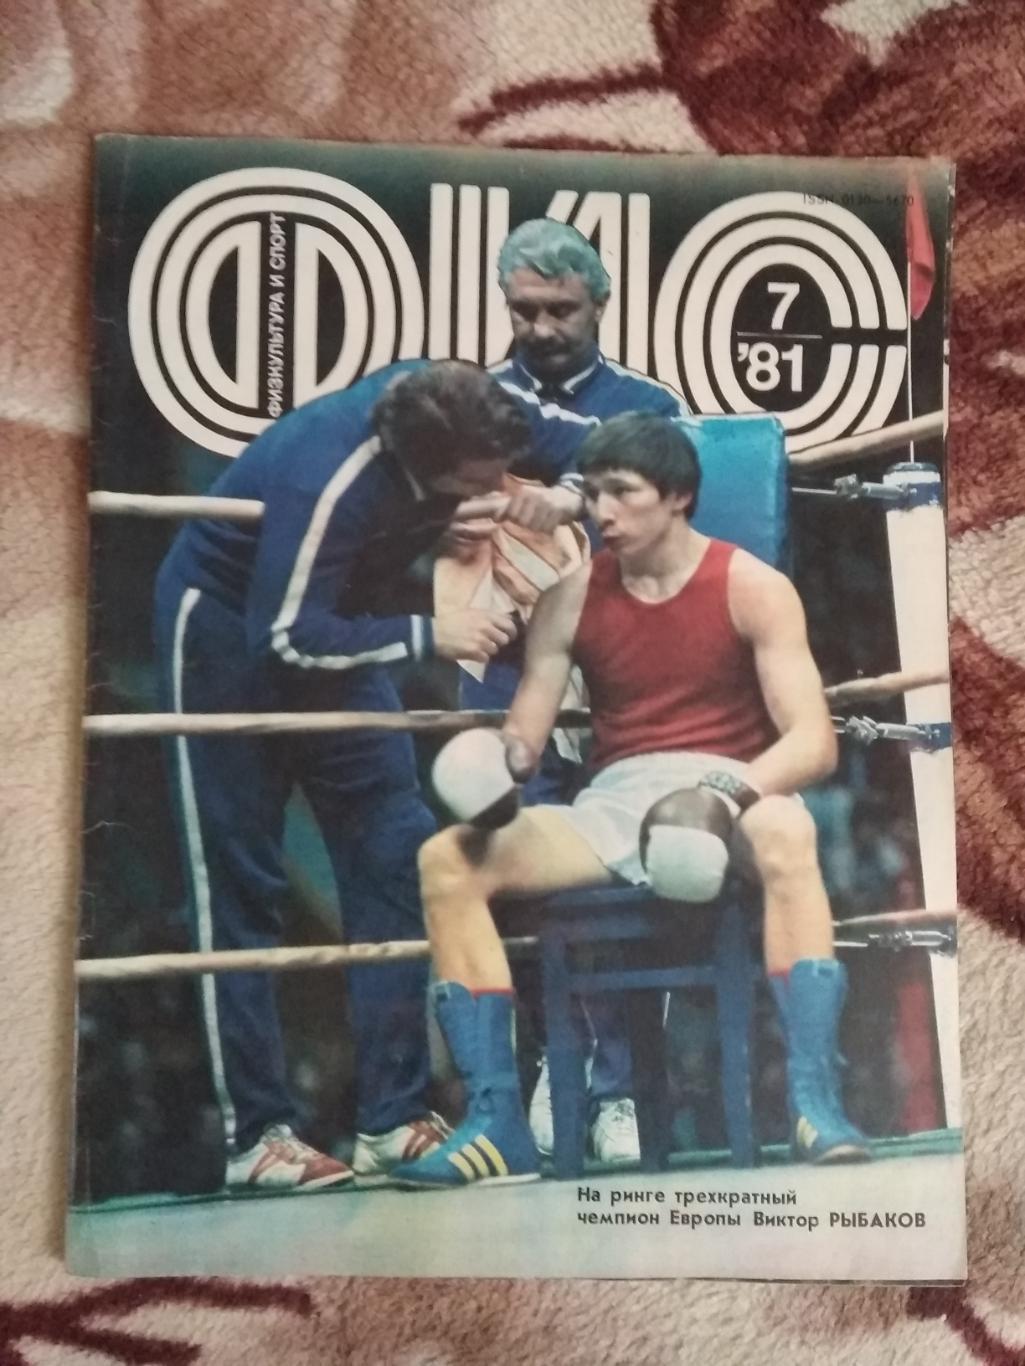 Журнал.Физкультура и спорт № 7 1981 г. (ФиС).